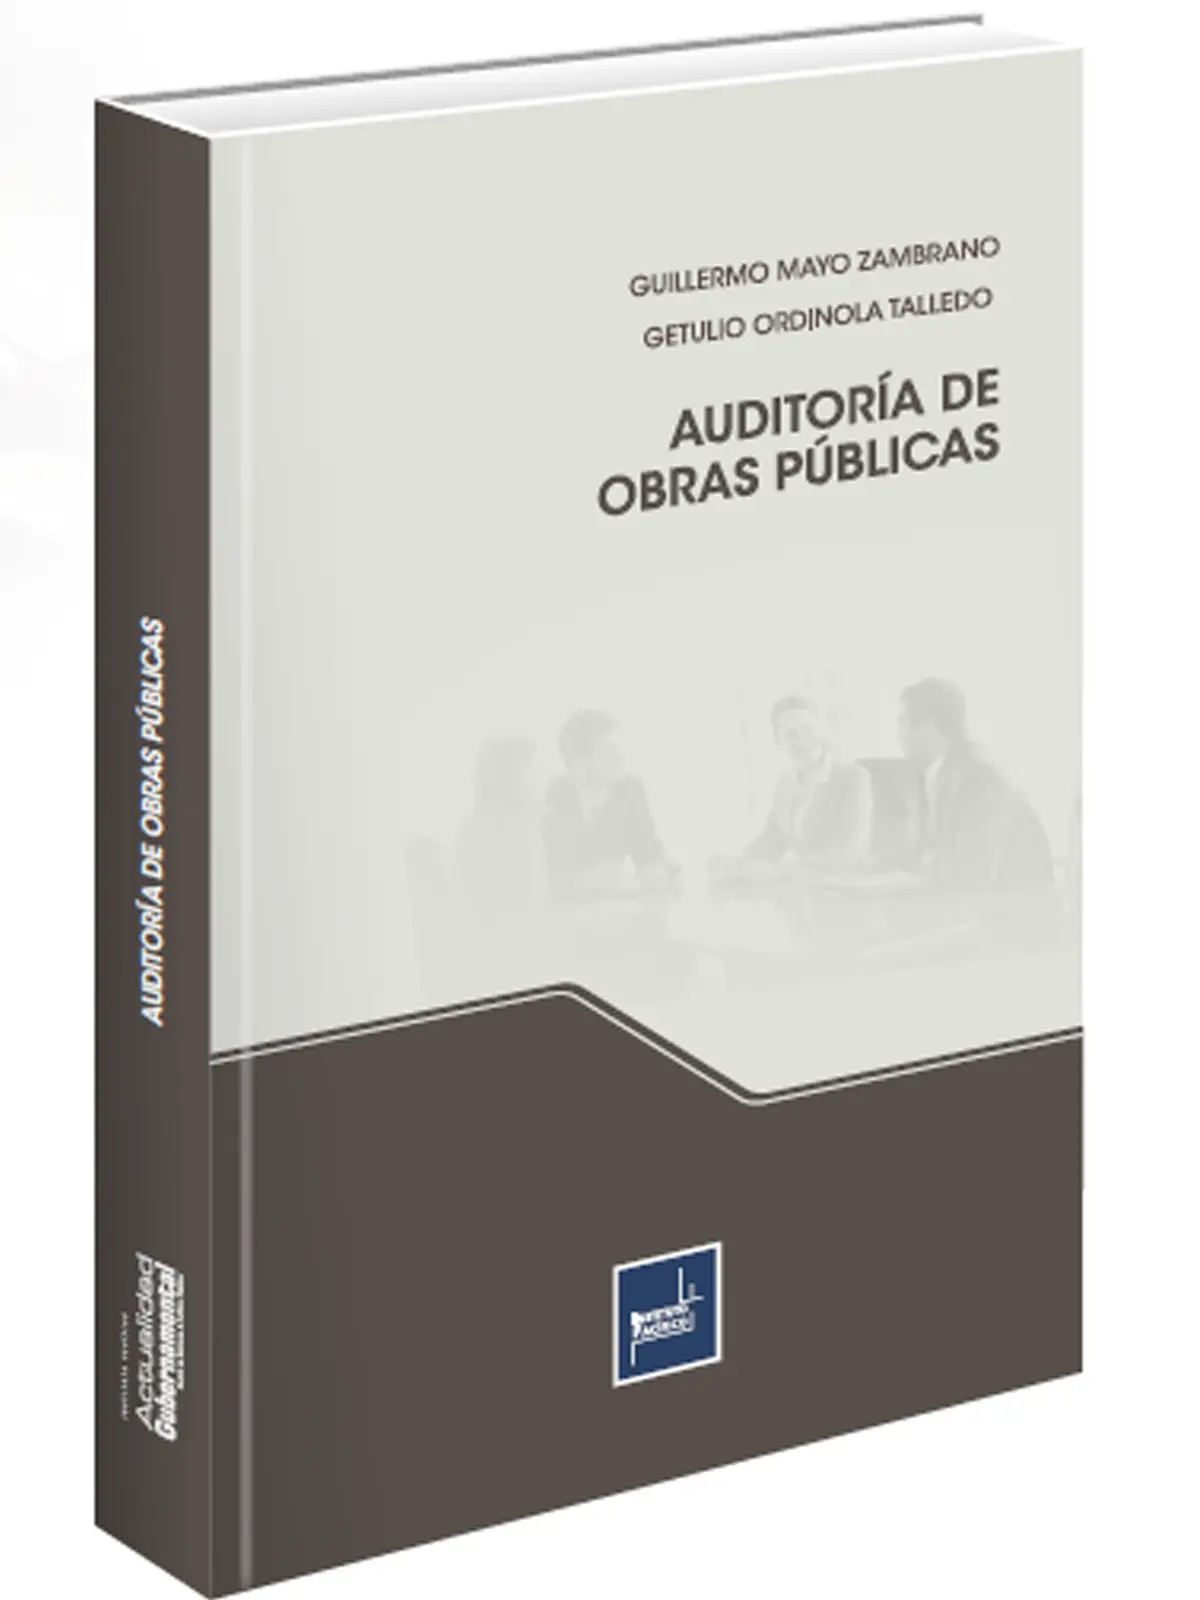 normas para auditar obra publica - Qué normativa se utiliza en la auditoría